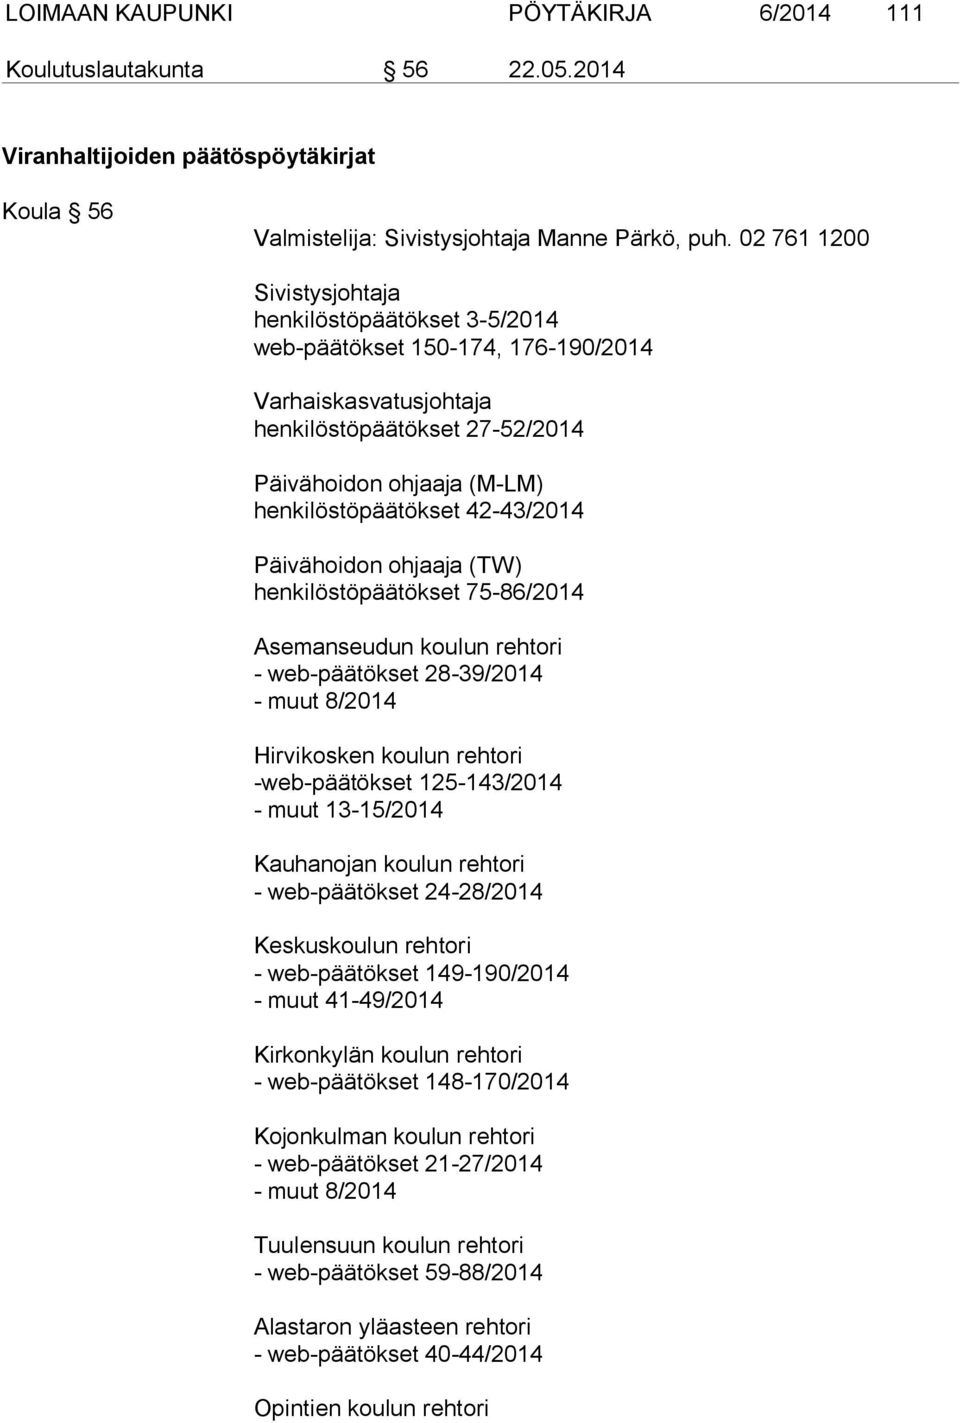 42-43/2014 Päivähoidon ohjaaja (TW) henkilöstöpäätökset 75-86/2014 Asemanseudun koulun rehtori - web-päätökset 28-39/2014 - muut 8/2014 Hirvikosken koulun rehtori -web-päätökset 125-143/2014 - muut